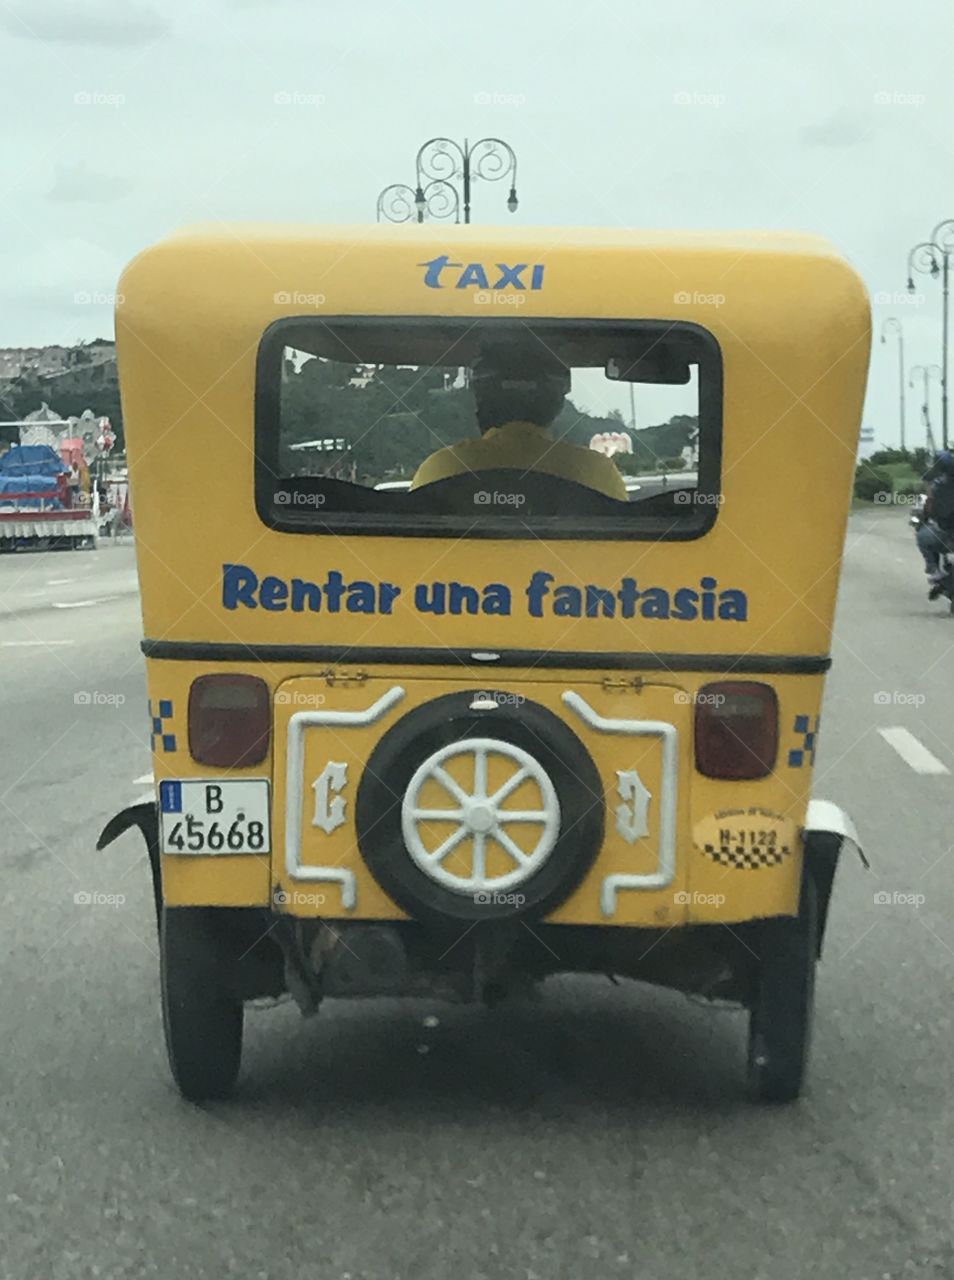 Taxicab in Havana